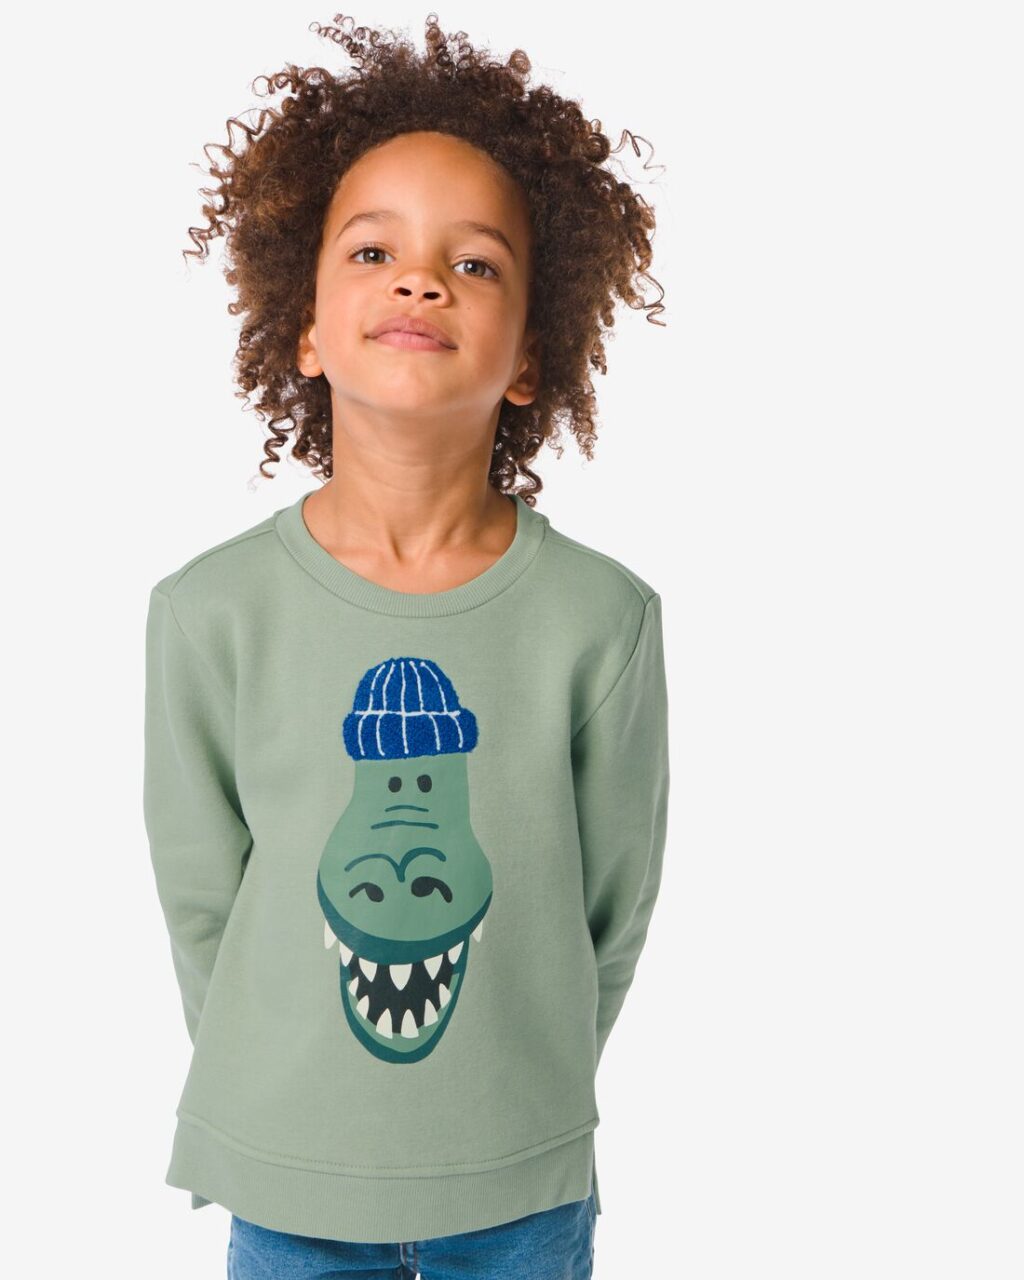 HEMA Kindersweater Dino Groen (groen) ~ Spinze.nl